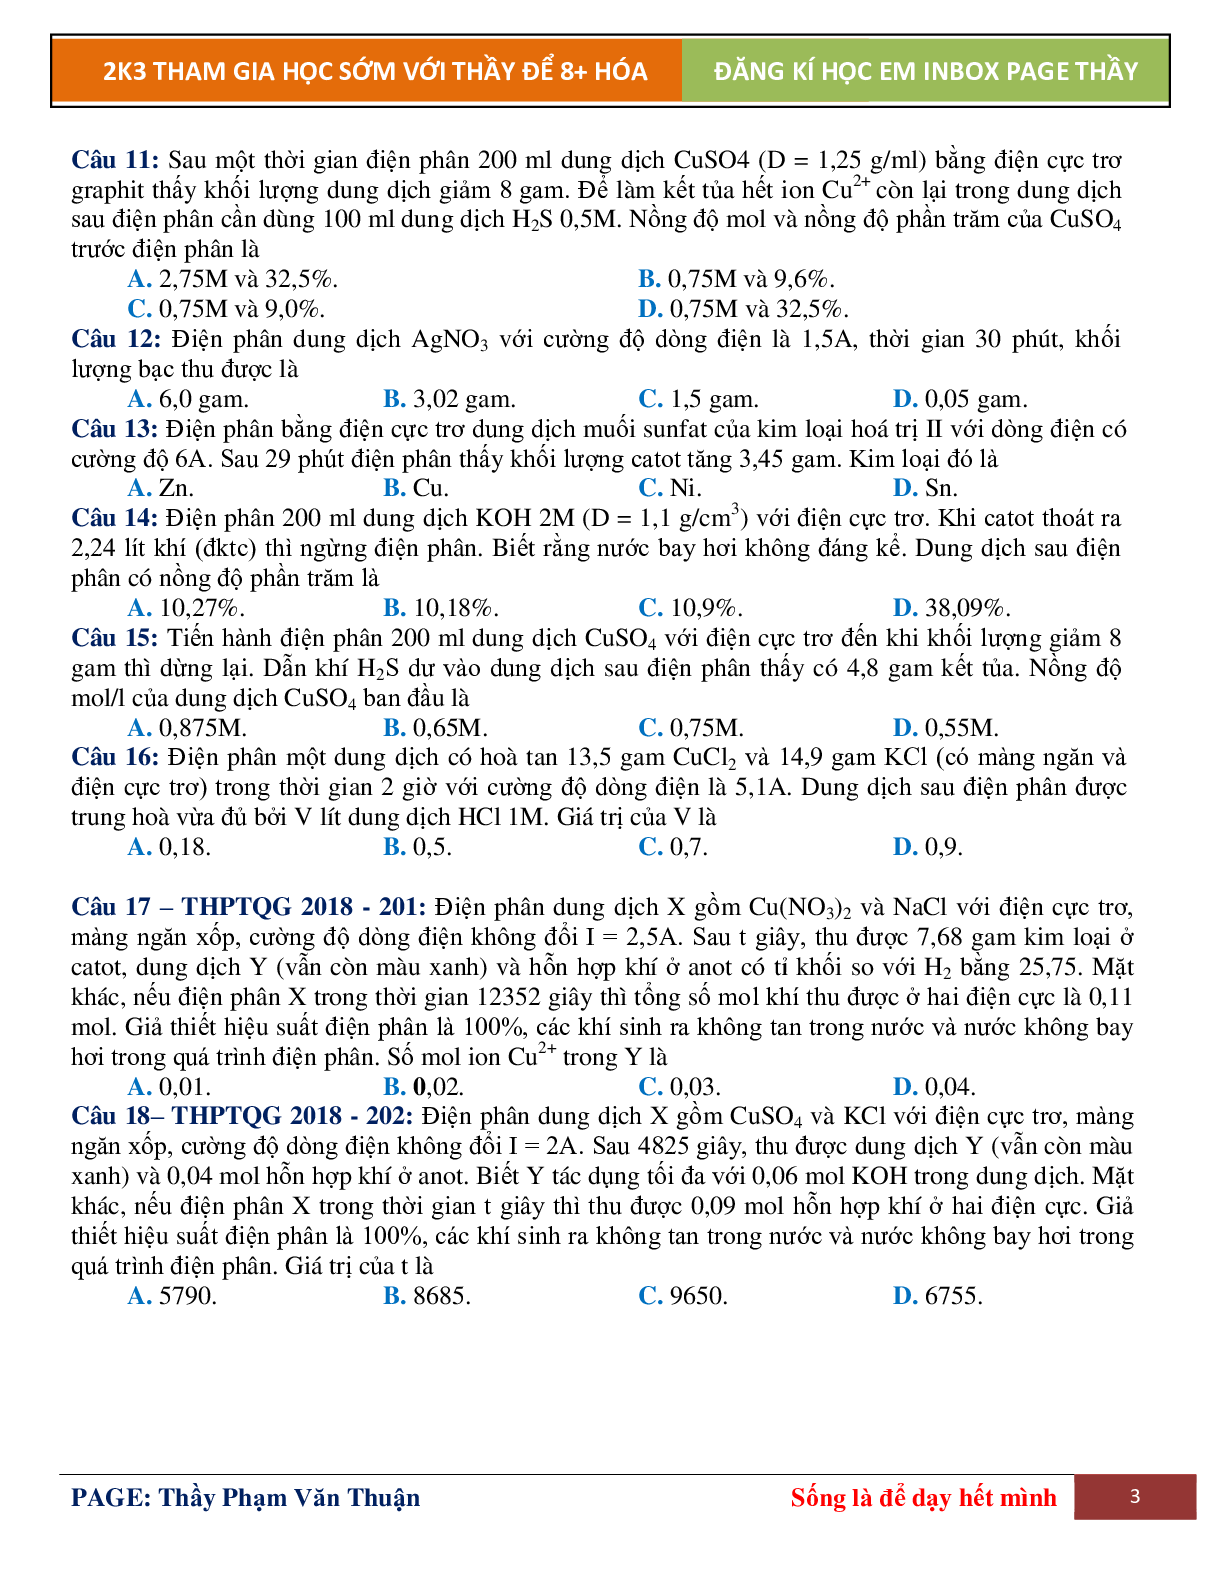 Lý Thuyết Điện Phân Dung Dịch Môn Hóa Học Lớp 12 (trang 3)